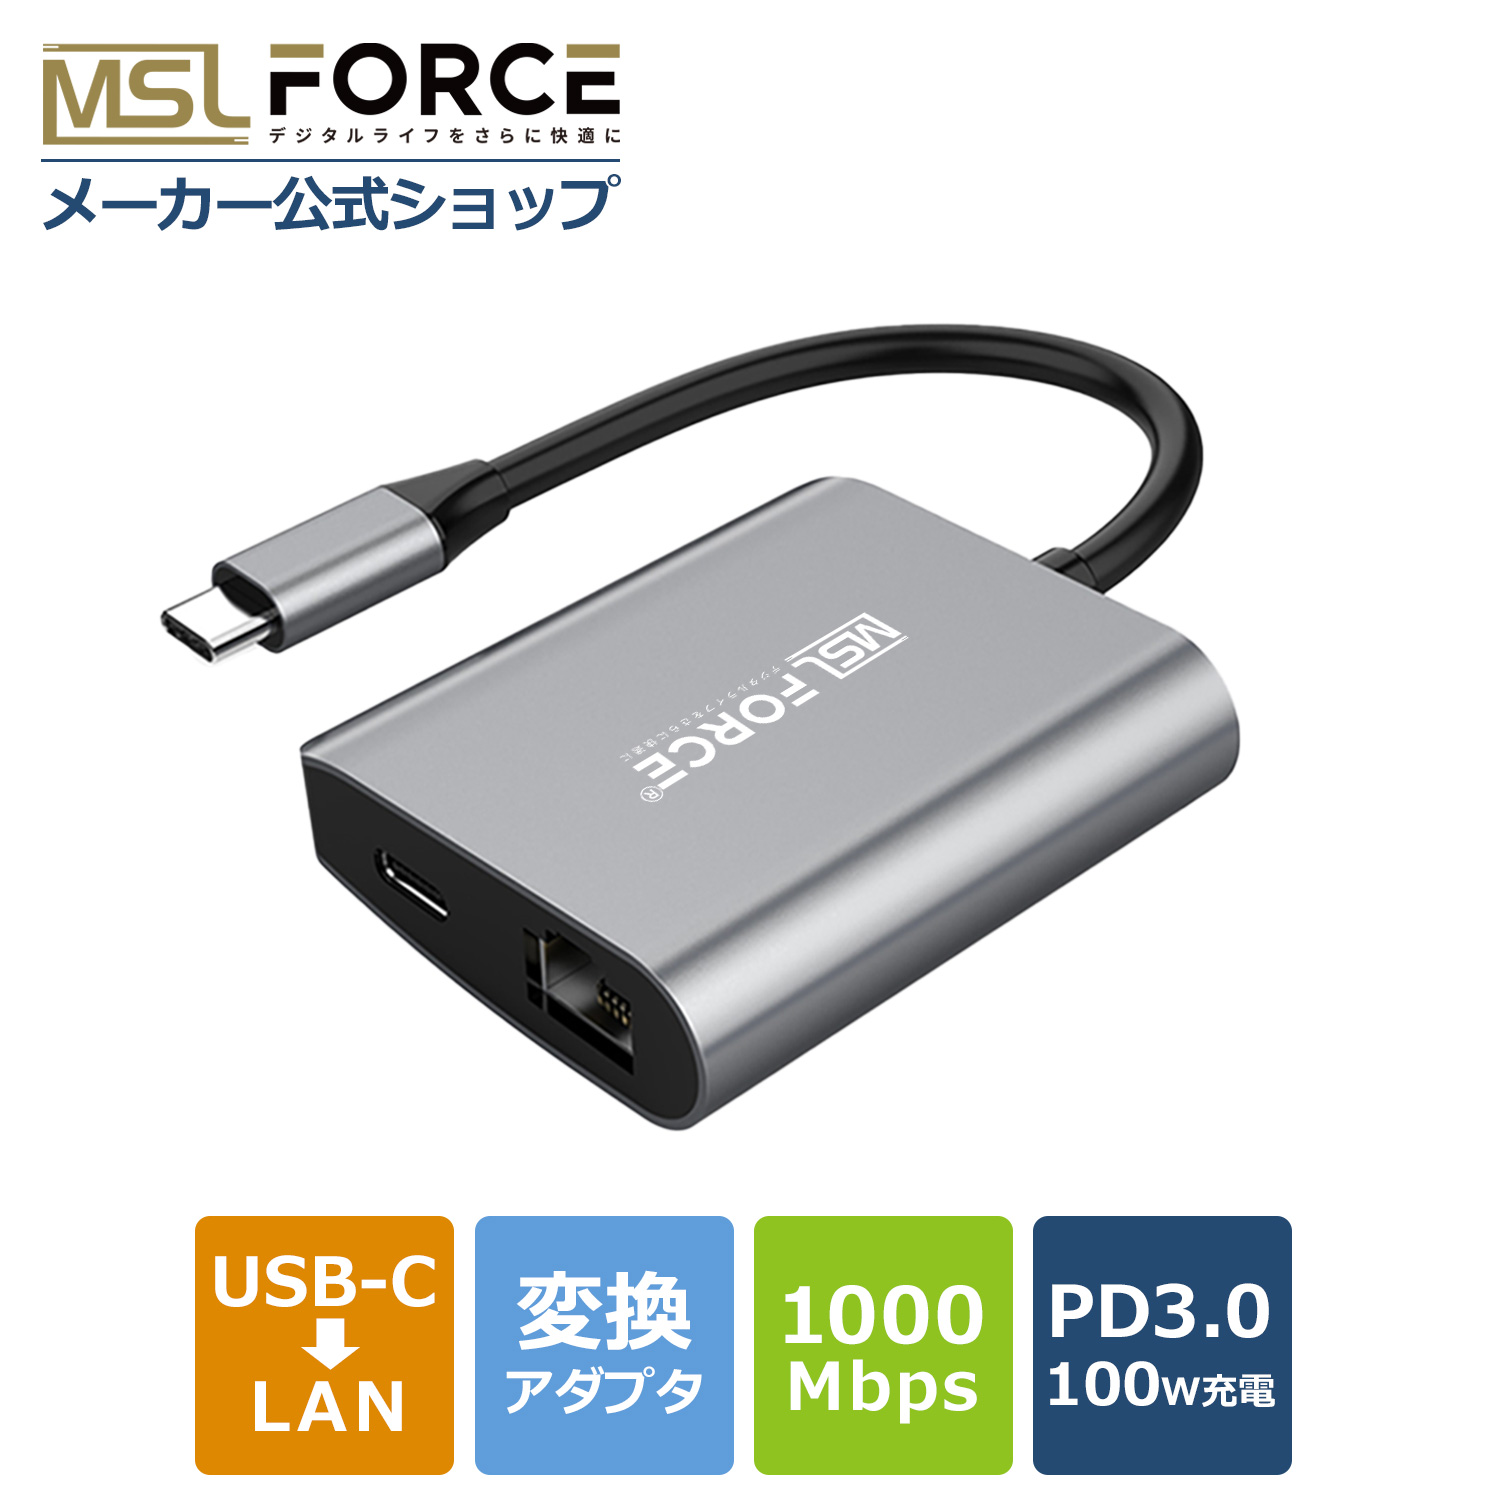 USBハブ付き48+5メディア対応カードリーダ - MR-C24BK